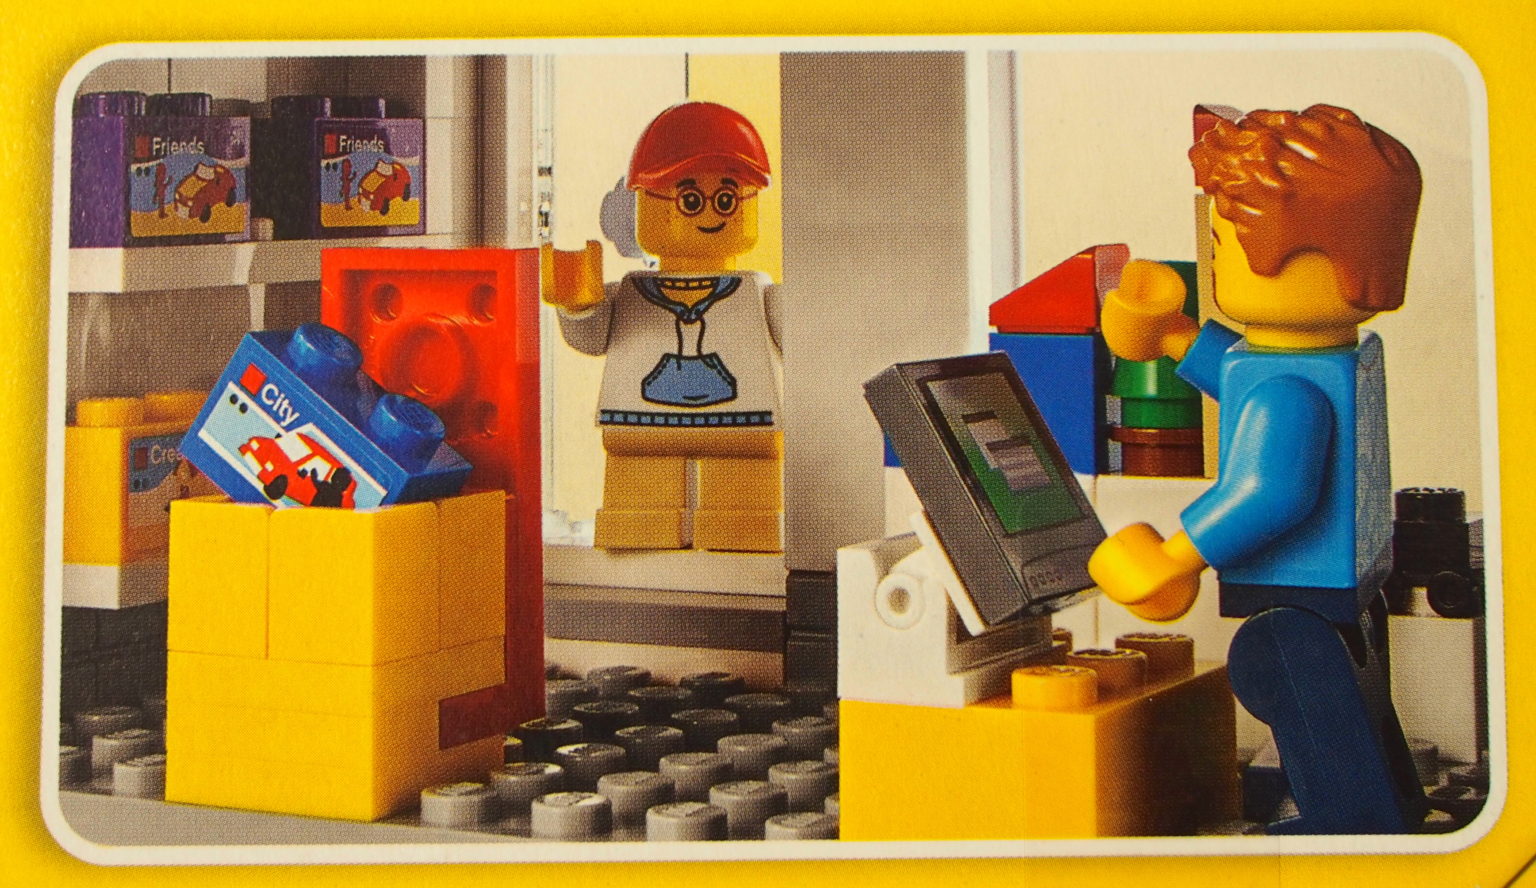 かわいいレゴ(R)ブランドストアセット「LEGO Brand Store 40305」 購入レポート – おもちゃのニュース – toymim